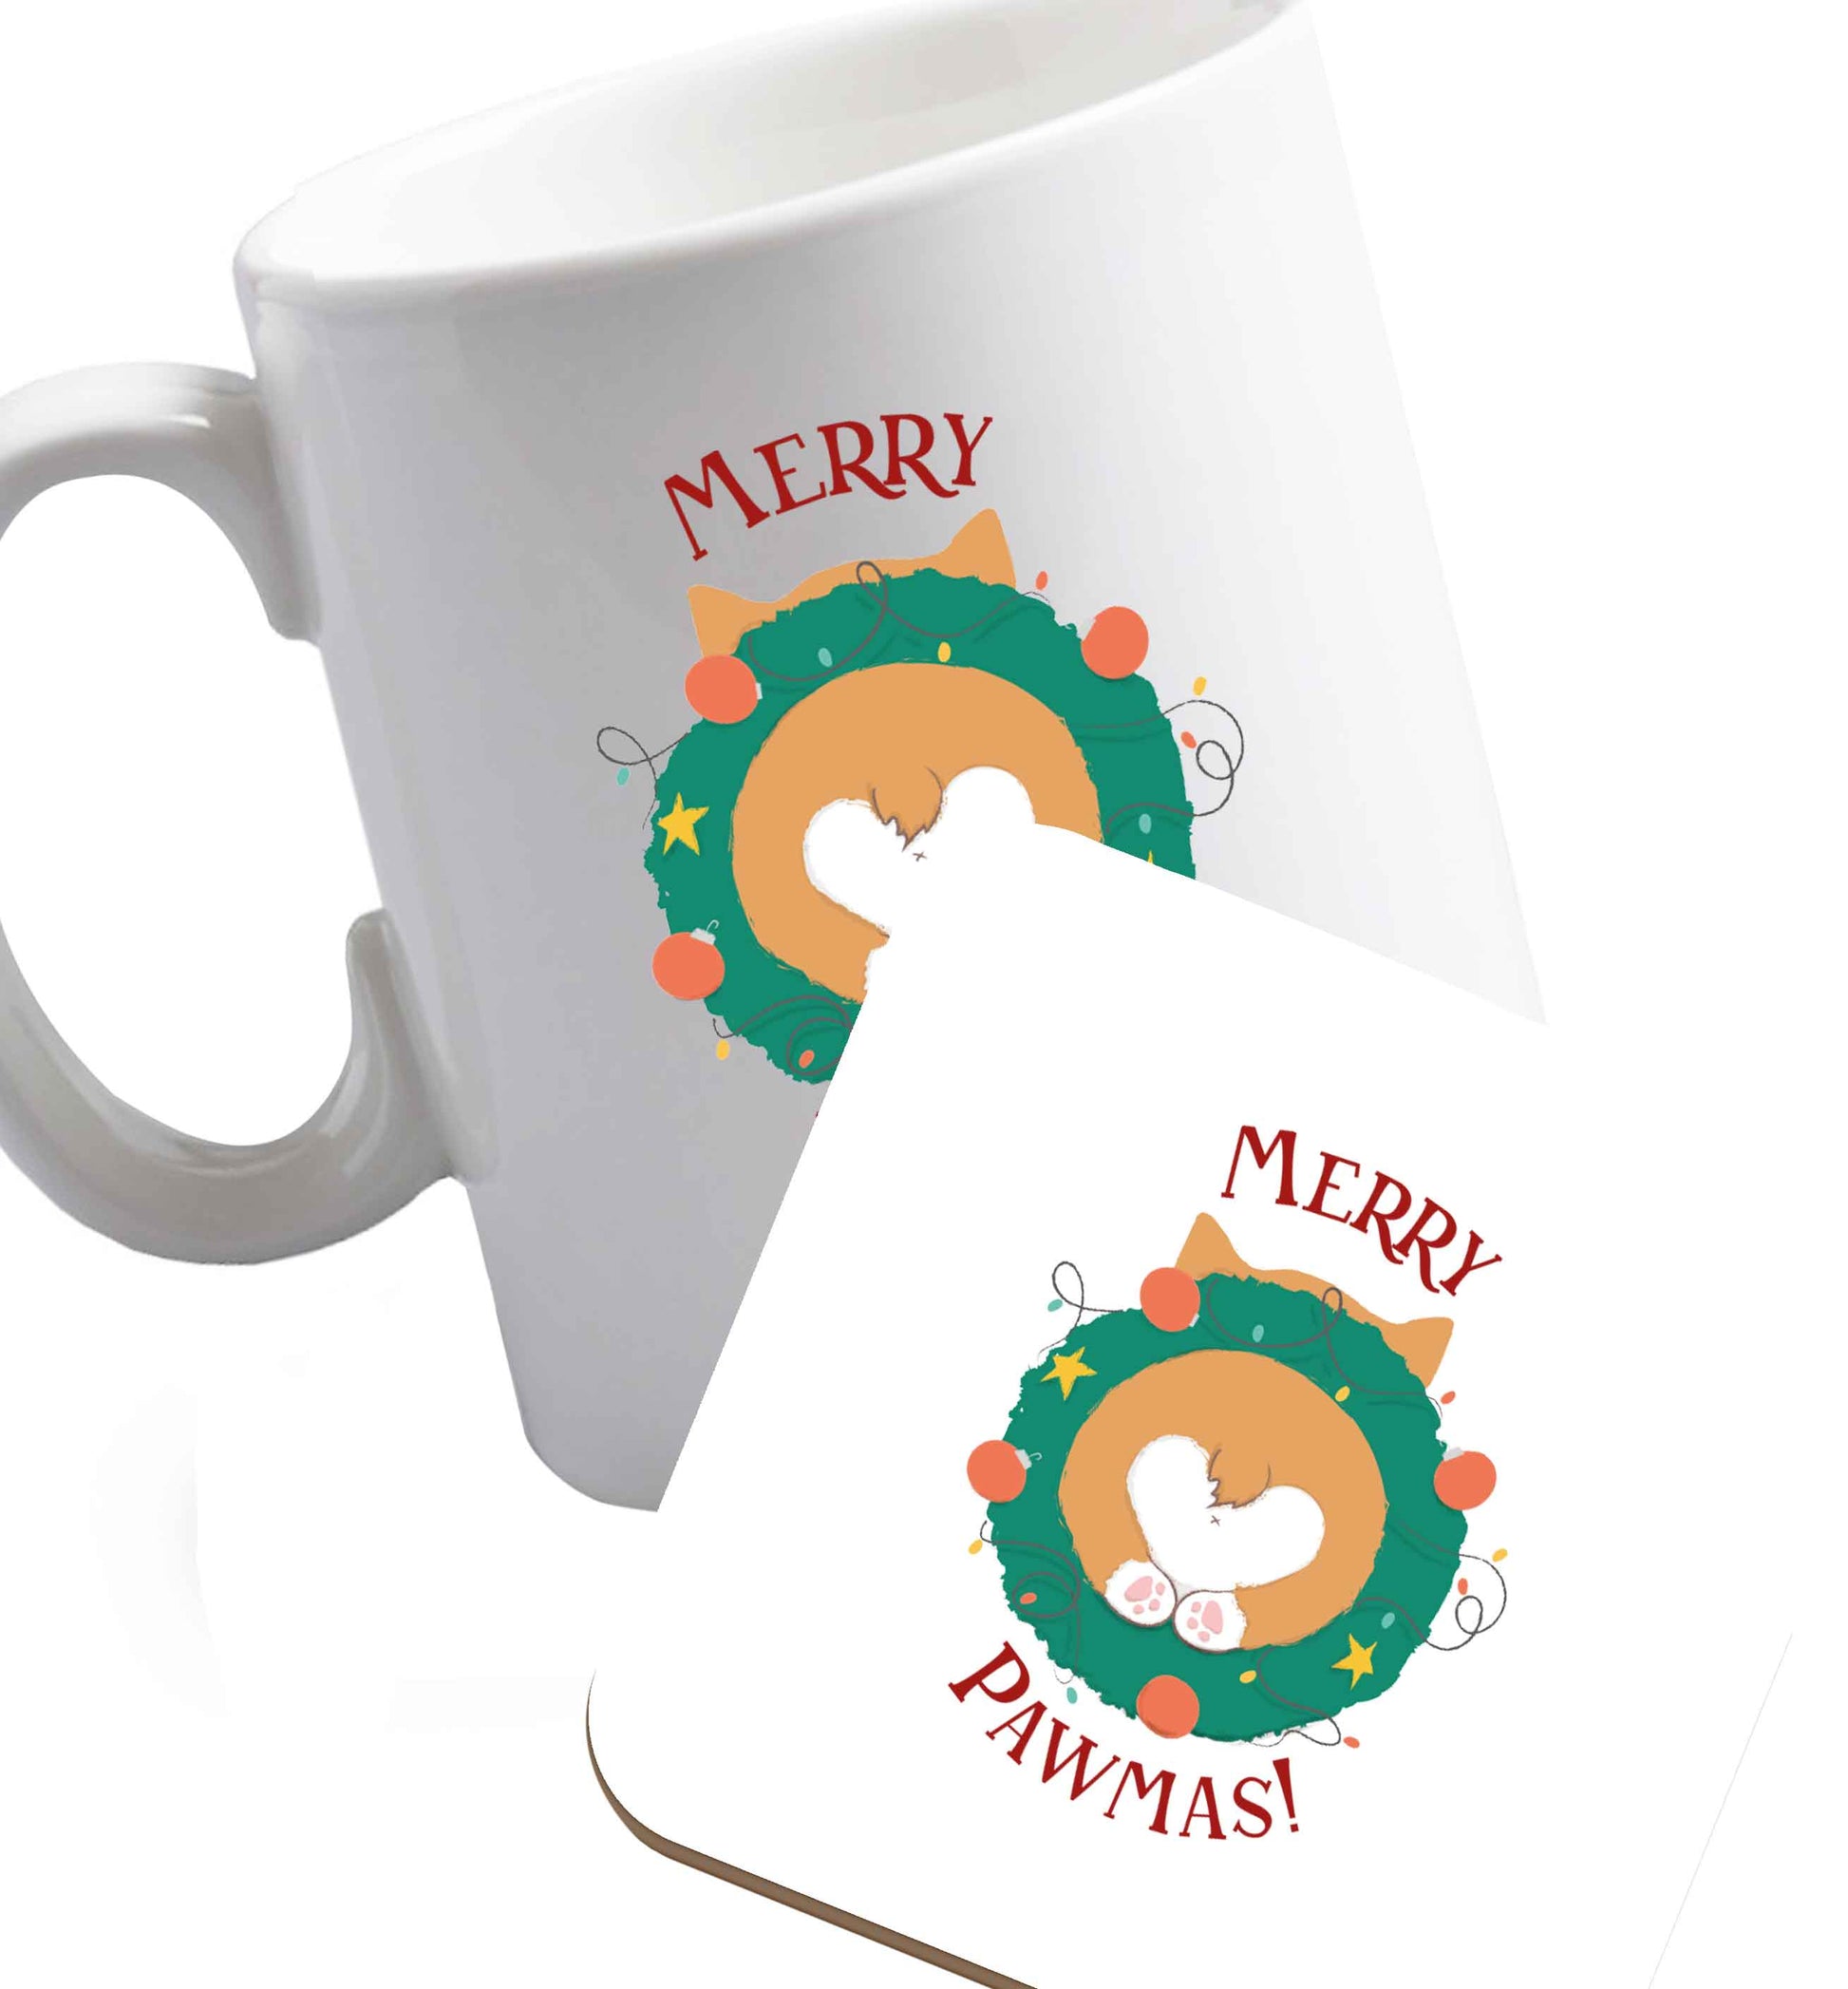 10 oz Merry Pawmas ceramic mug and coaster set right handed